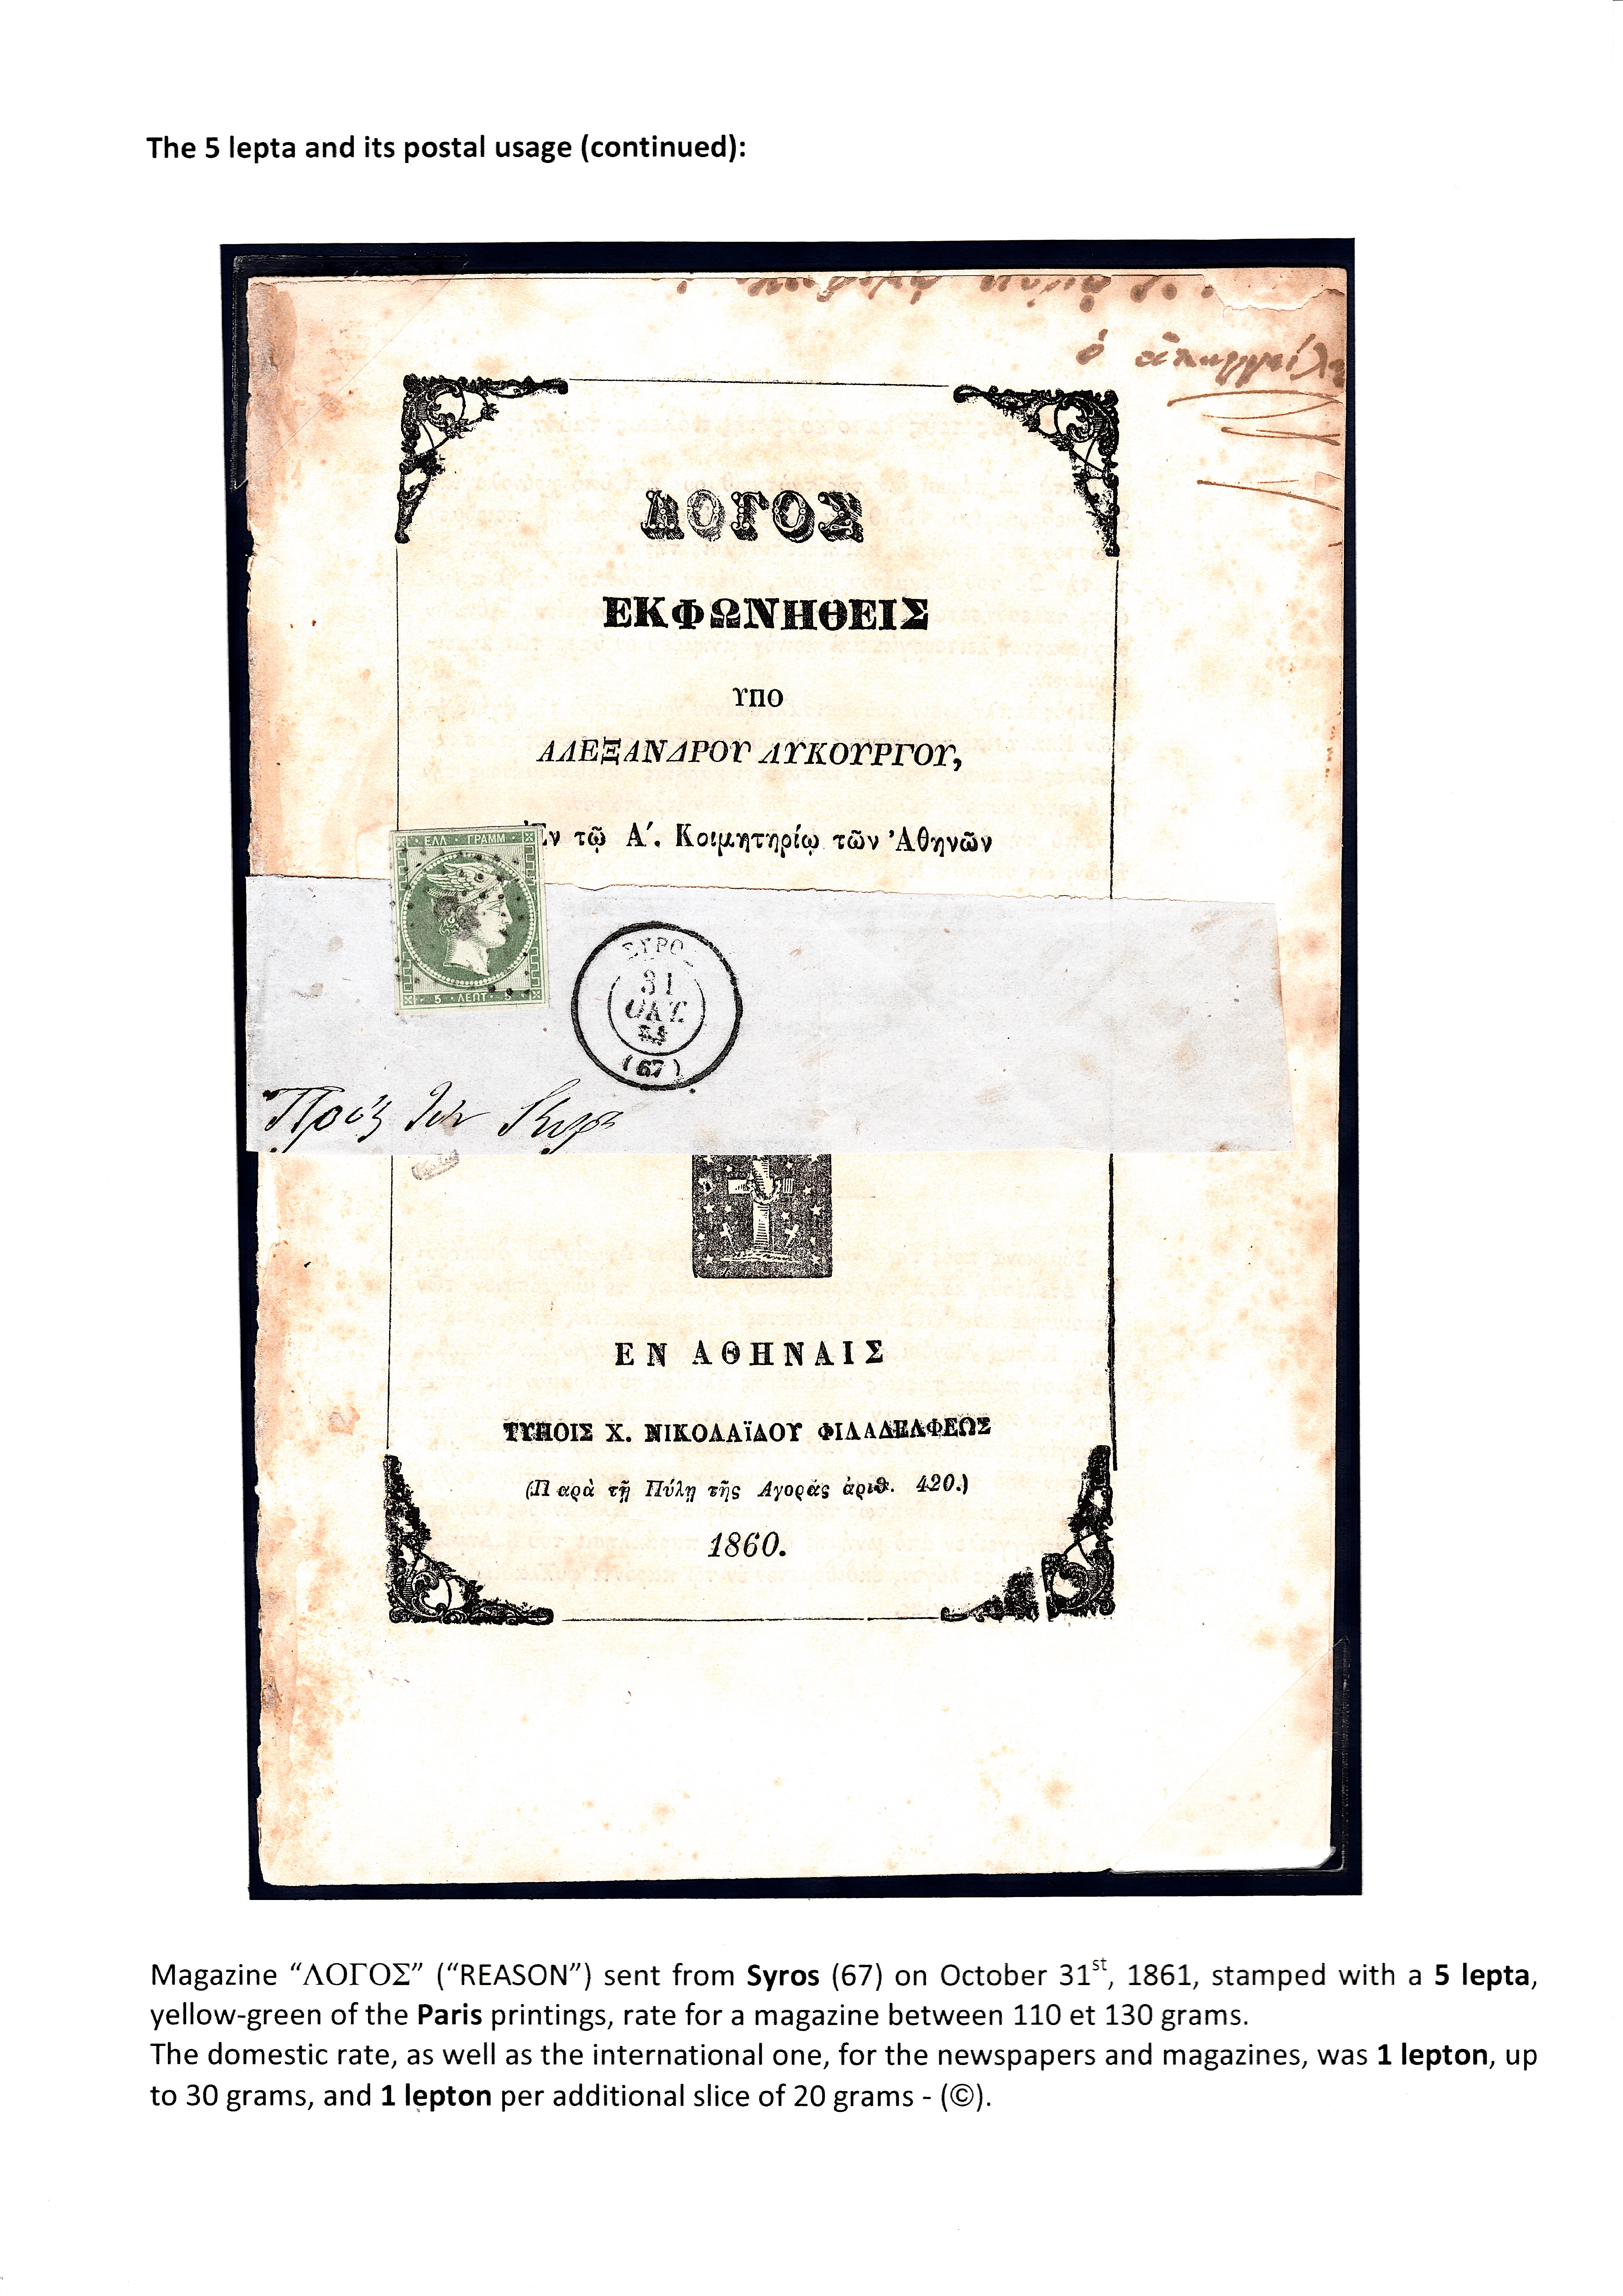 La fabrication et l���utilisation postale des tirages de Paris de la grosse t��te d���Herm��s de Gr��ce��� p. 34